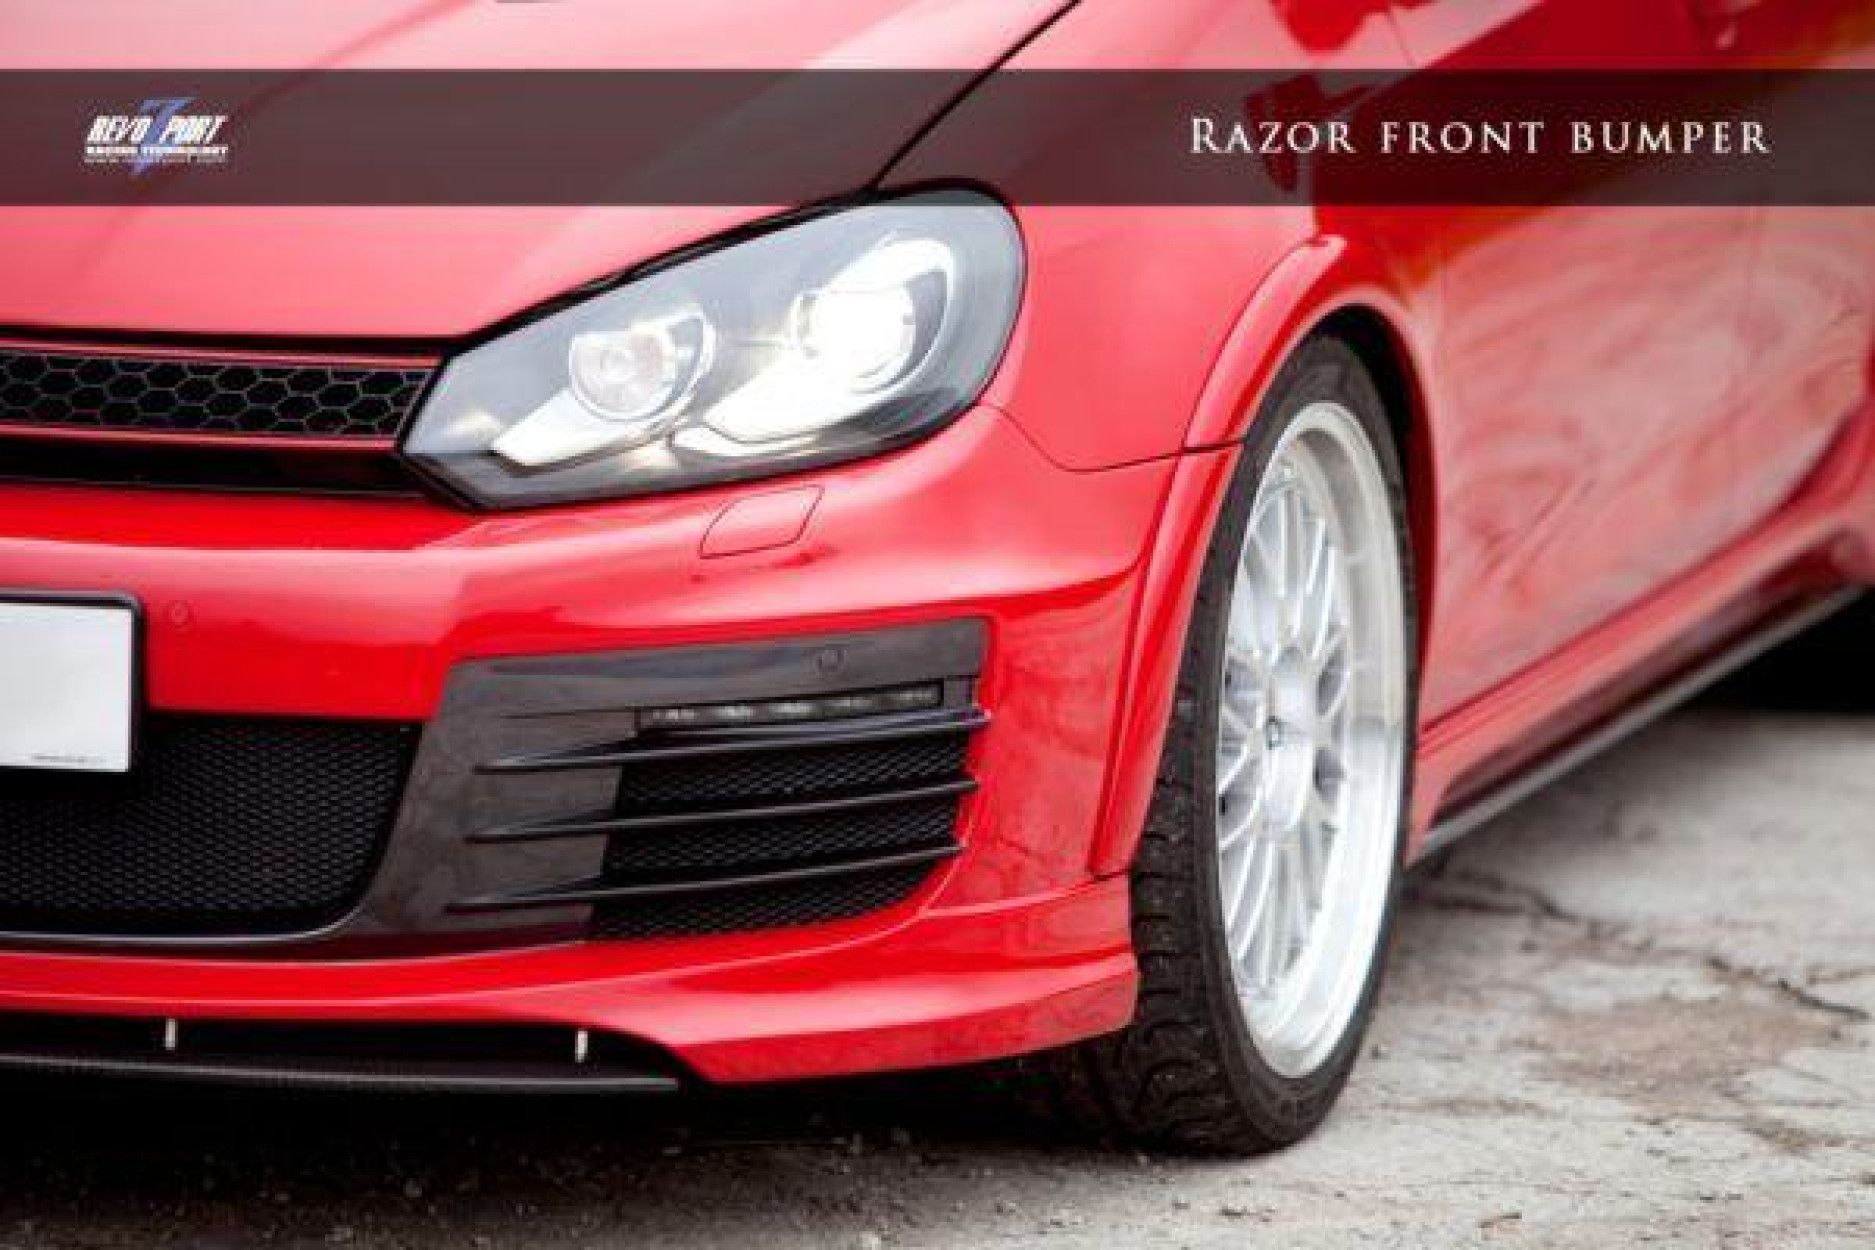 RevoZport GFK Front/Stoßstange für Volkswagen Golf MK6|Golf 6 GTI "Razor" (2) 